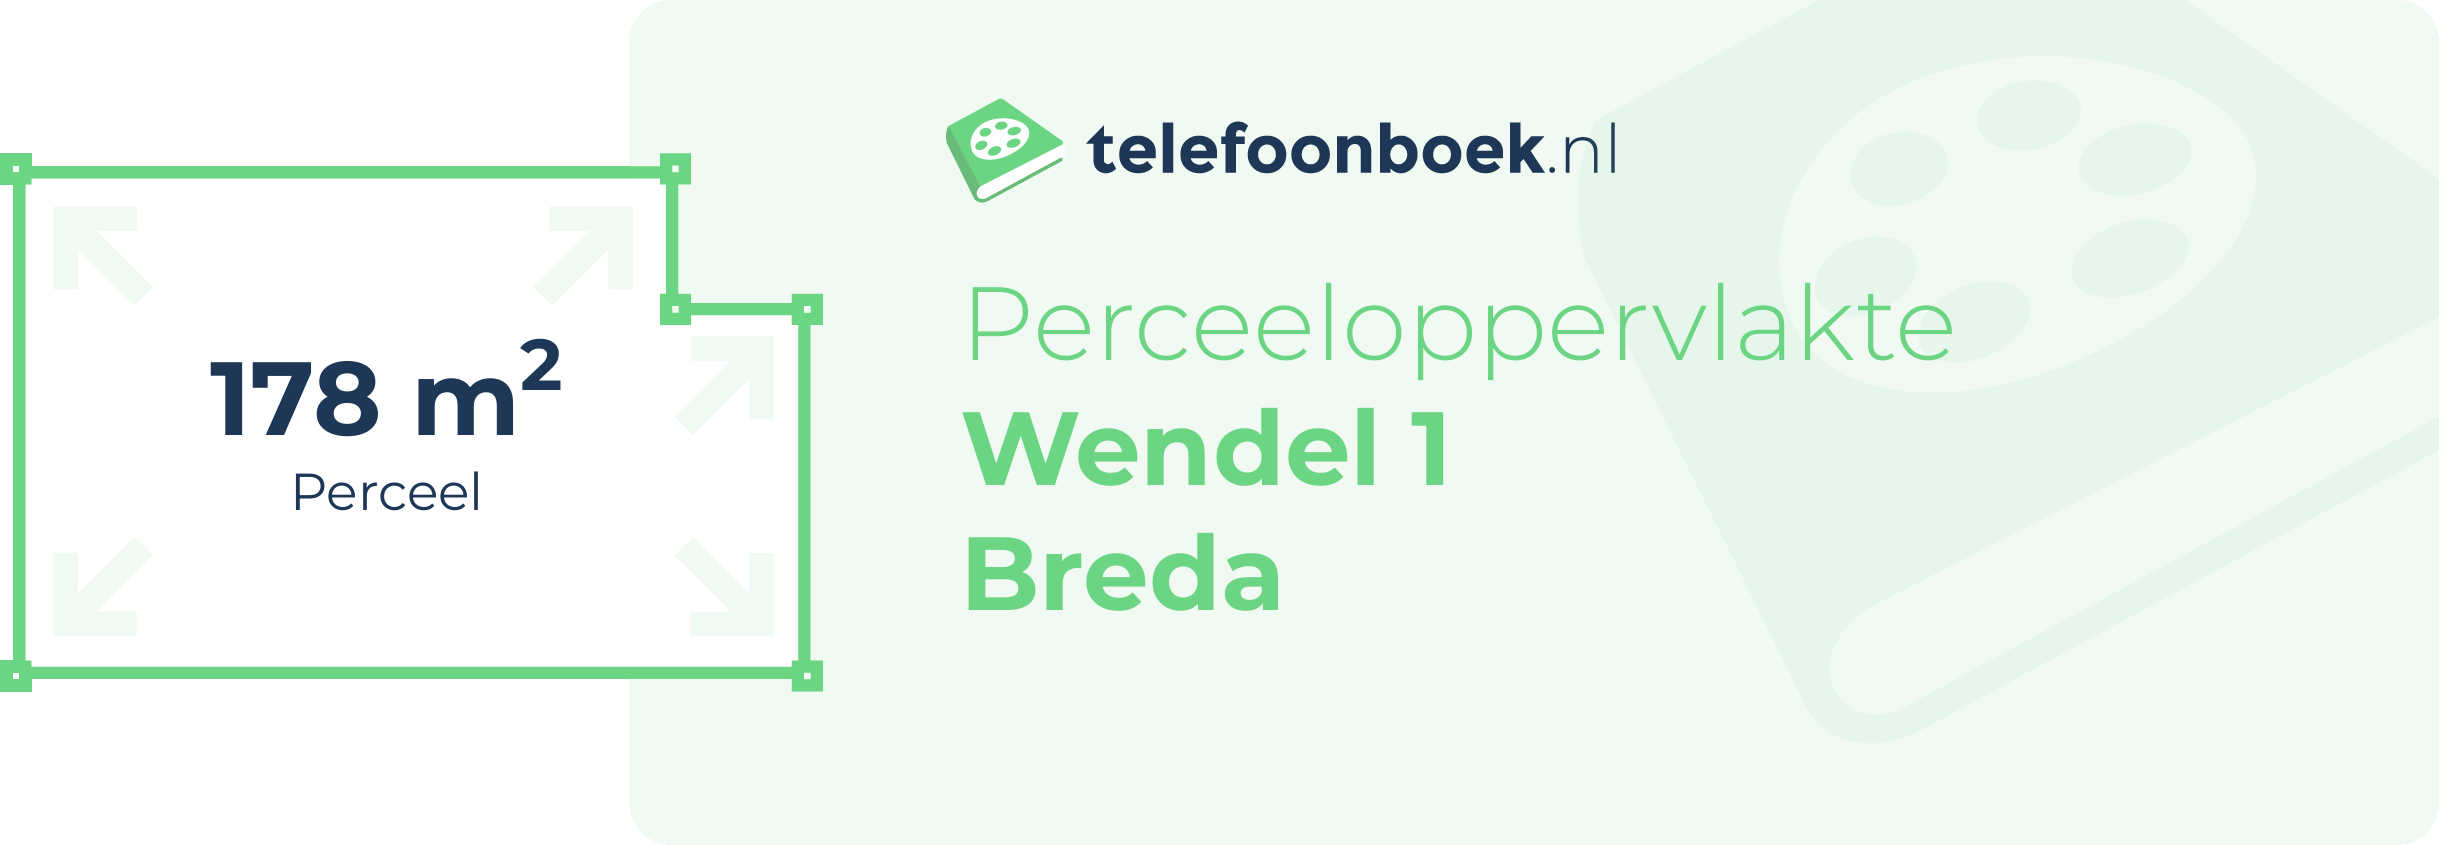 Perceeloppervlakte Wendel 1 Breda